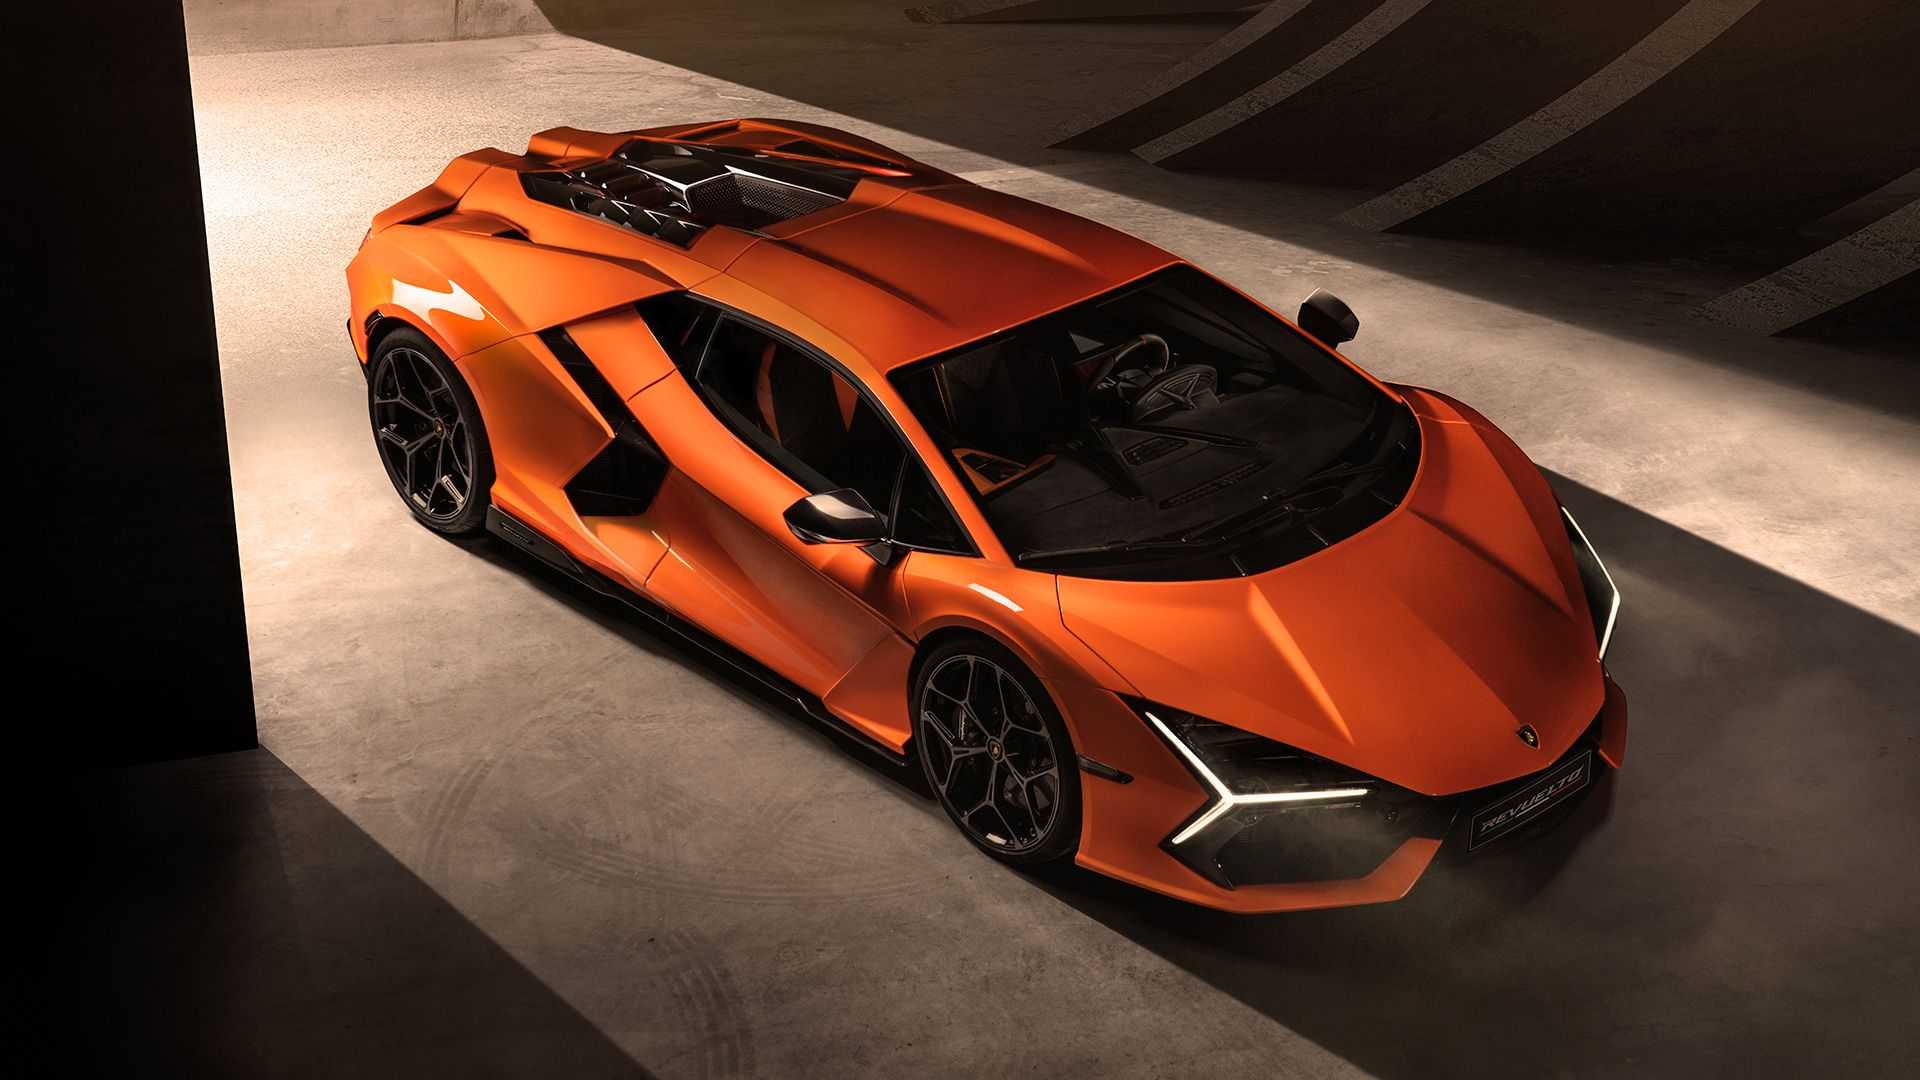 Ra mắt Lamborghini Revuelto thế chỗ Aventador: Siêu xe mạnh nhất lịch sử hãng nhưng đi phố chỉ ngang cơ Civic - ảnh 14